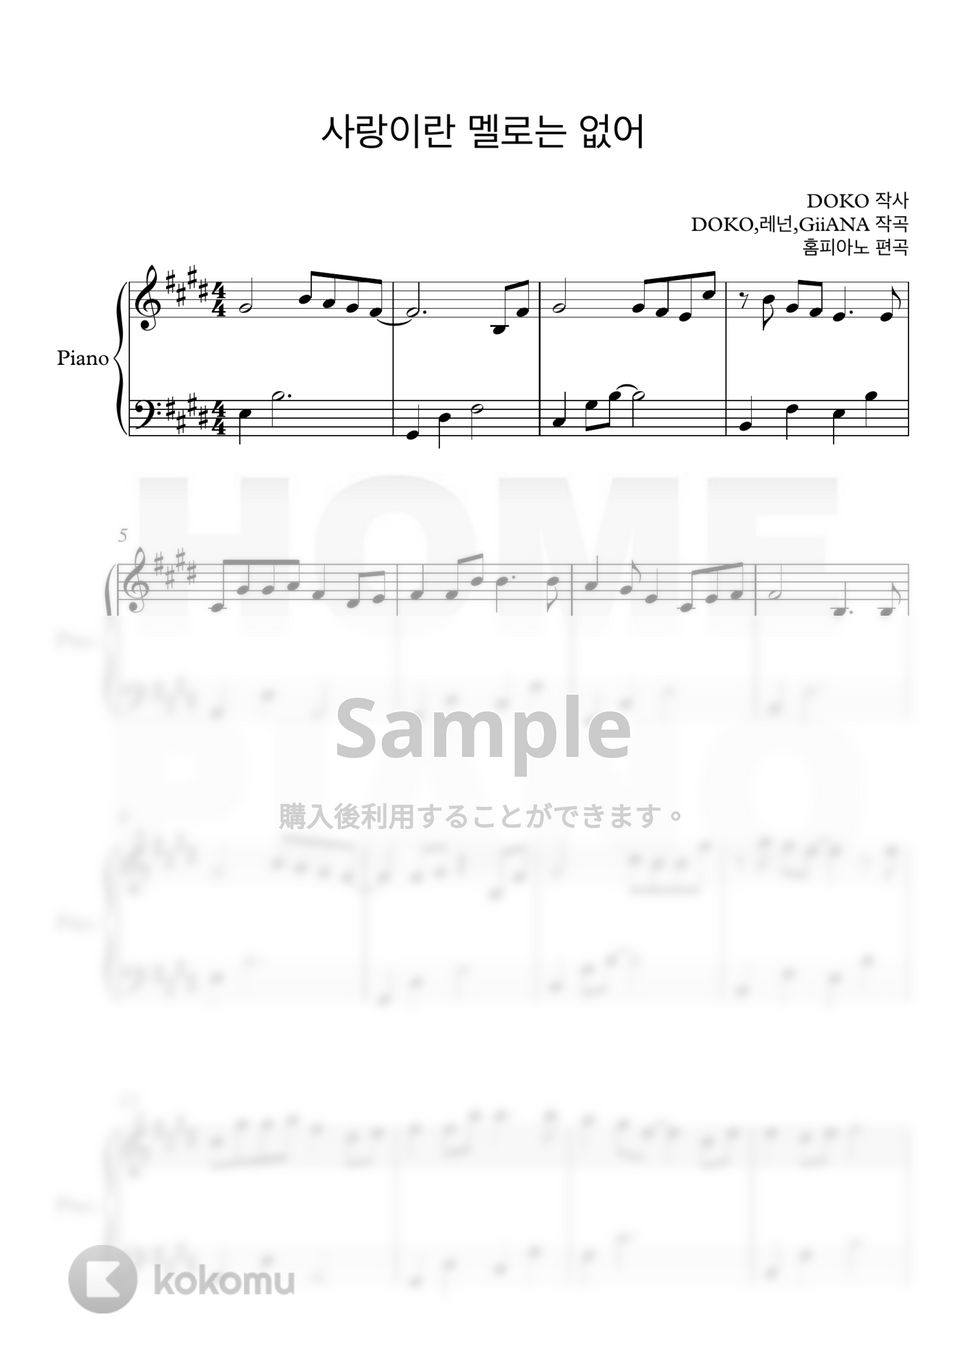 チョン・サングン - 愛というメロはない (初級) by HOME PIANO